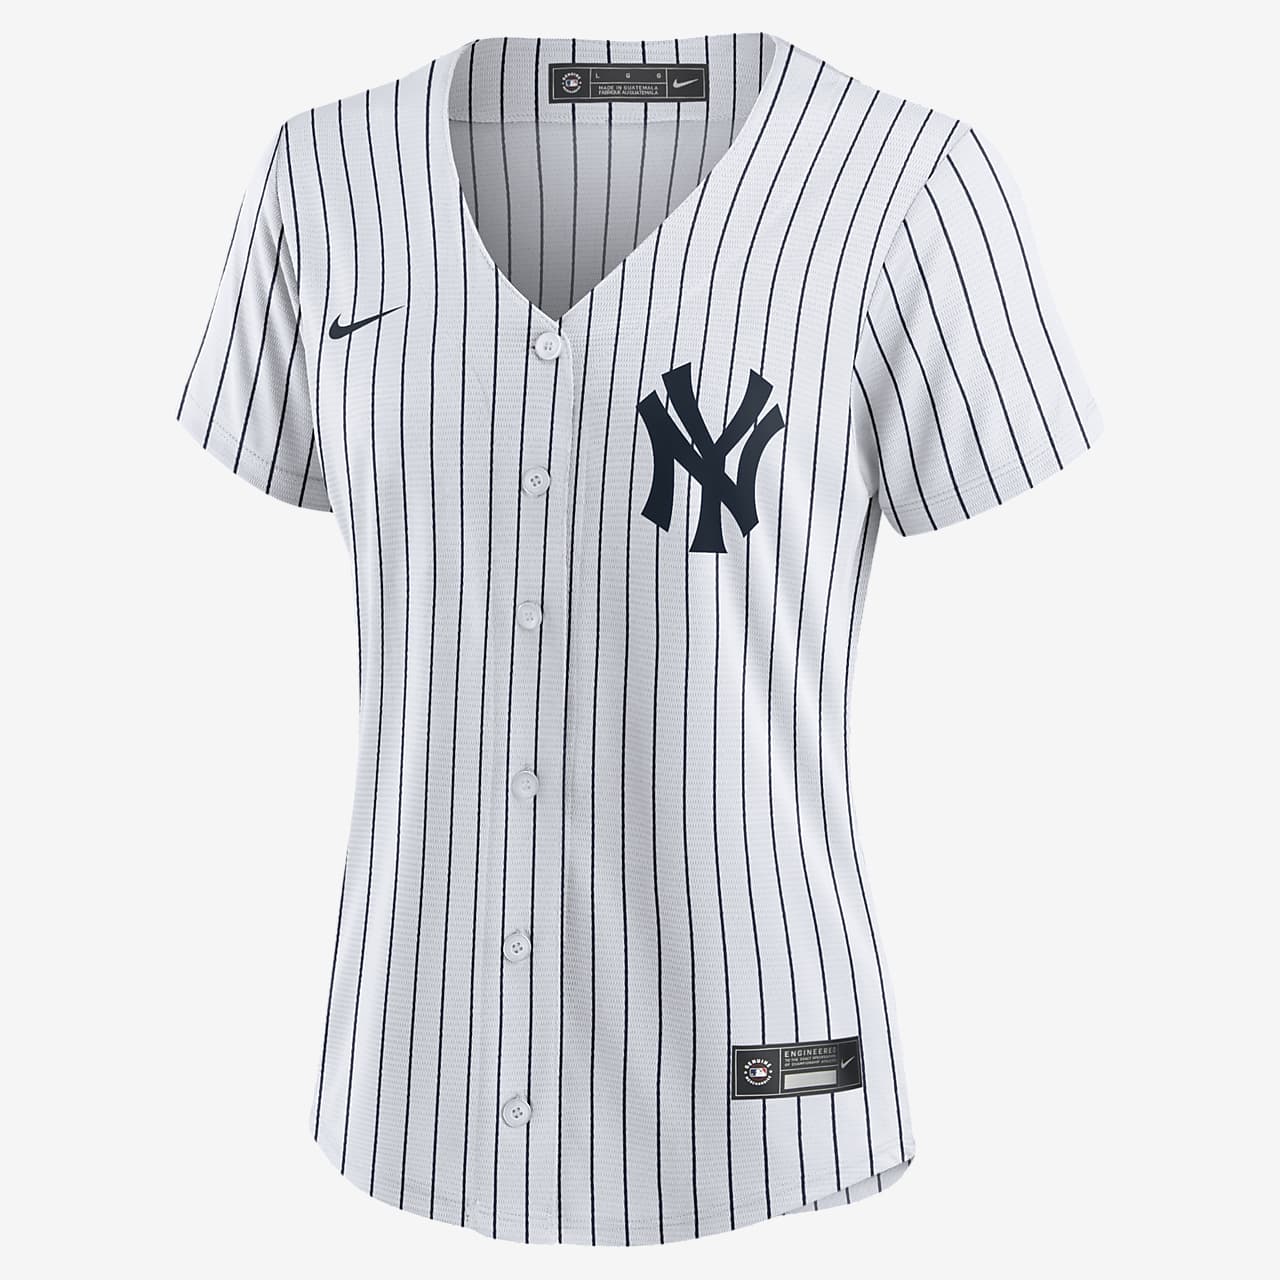 white new york yankees jersey